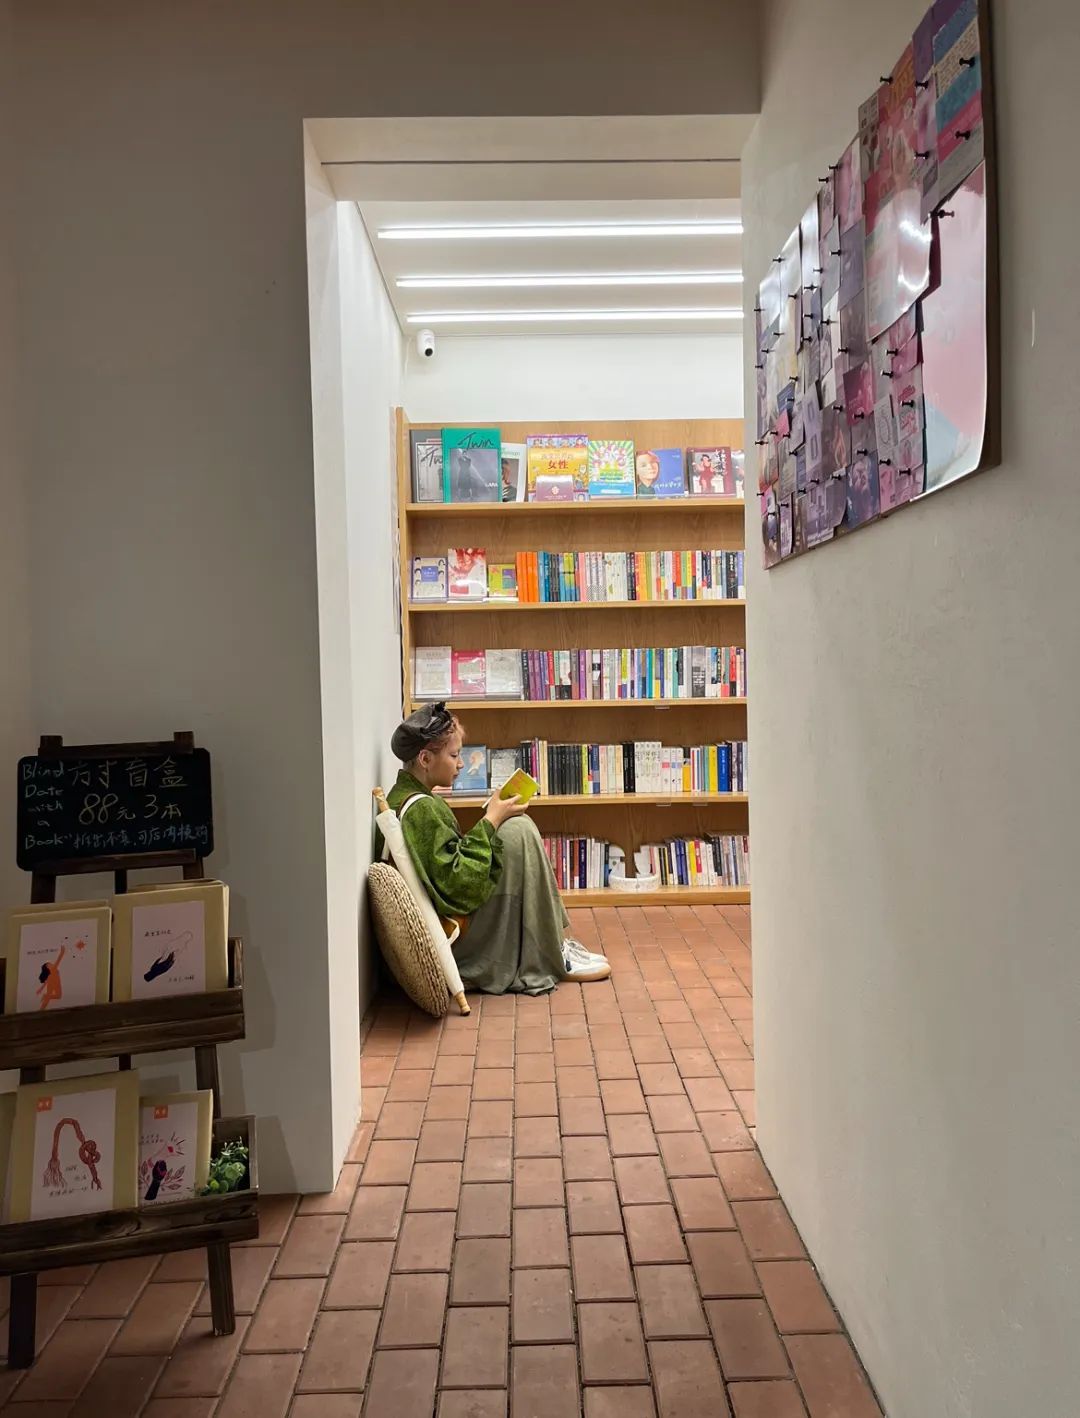 一位读者靠在书店的墙上认真阅读书籍。方寸书屋的门口是成都老牌面包店签名饼屋，两家原本毫不相干的店以这种独特的形式合二为一（图/阿祯 摄）